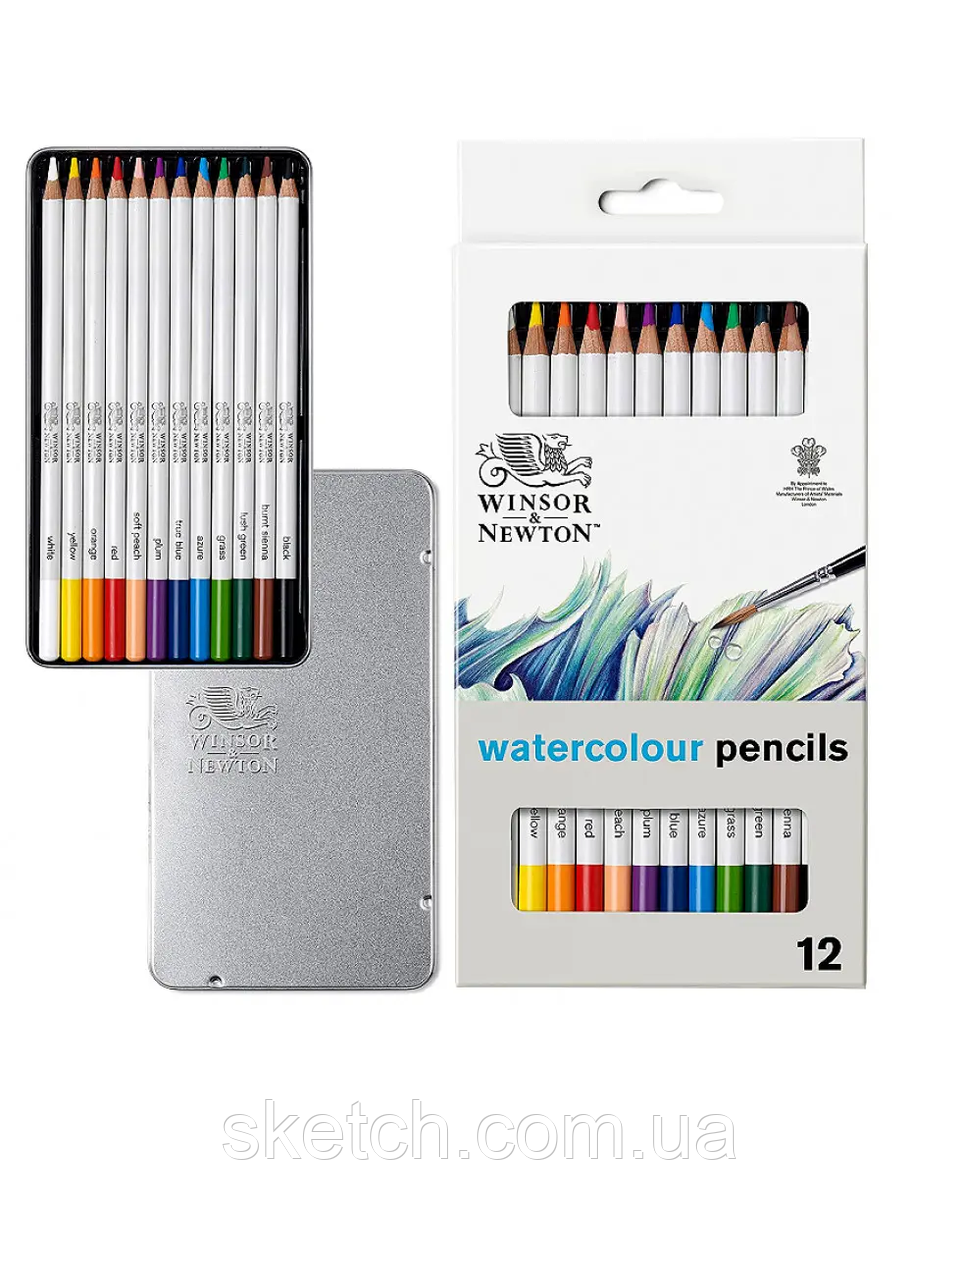 Набір акварельних олівців Studio Collection Watercolour Pensil, метал, Winsor&Newton, 12шт